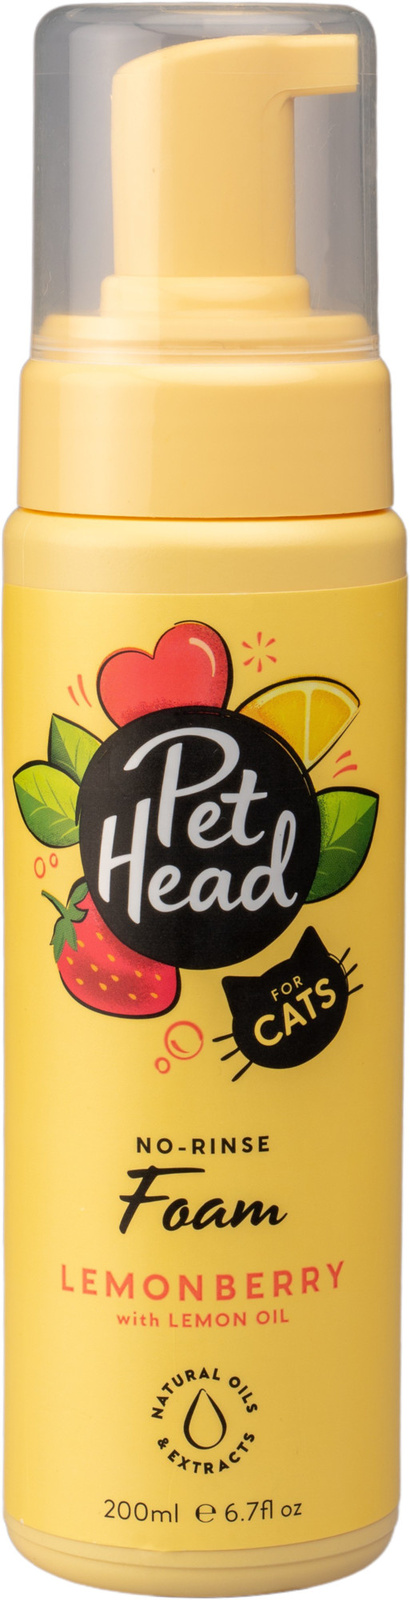 цена Pet Head Pet Head очищающая пенка без смывания для шерсти кошек Замуррчательный день клубничный лимонад (204 г)